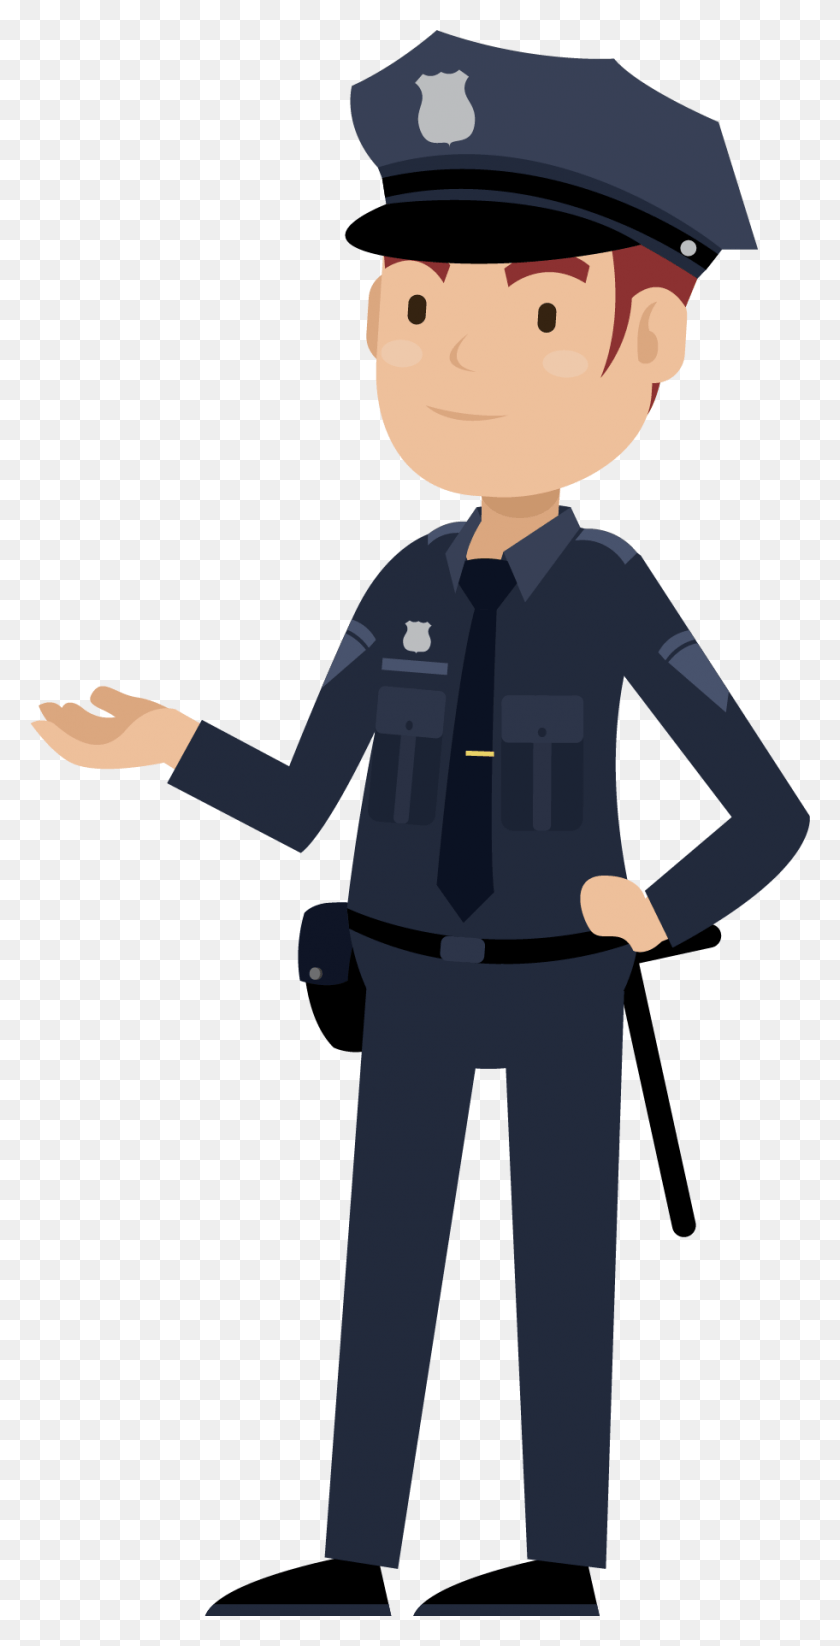 912x1855 Oficial De Seguridad Pública Delito De Seguridad De La Policía De Dibujos Animados, Persona, Humano Hd Png